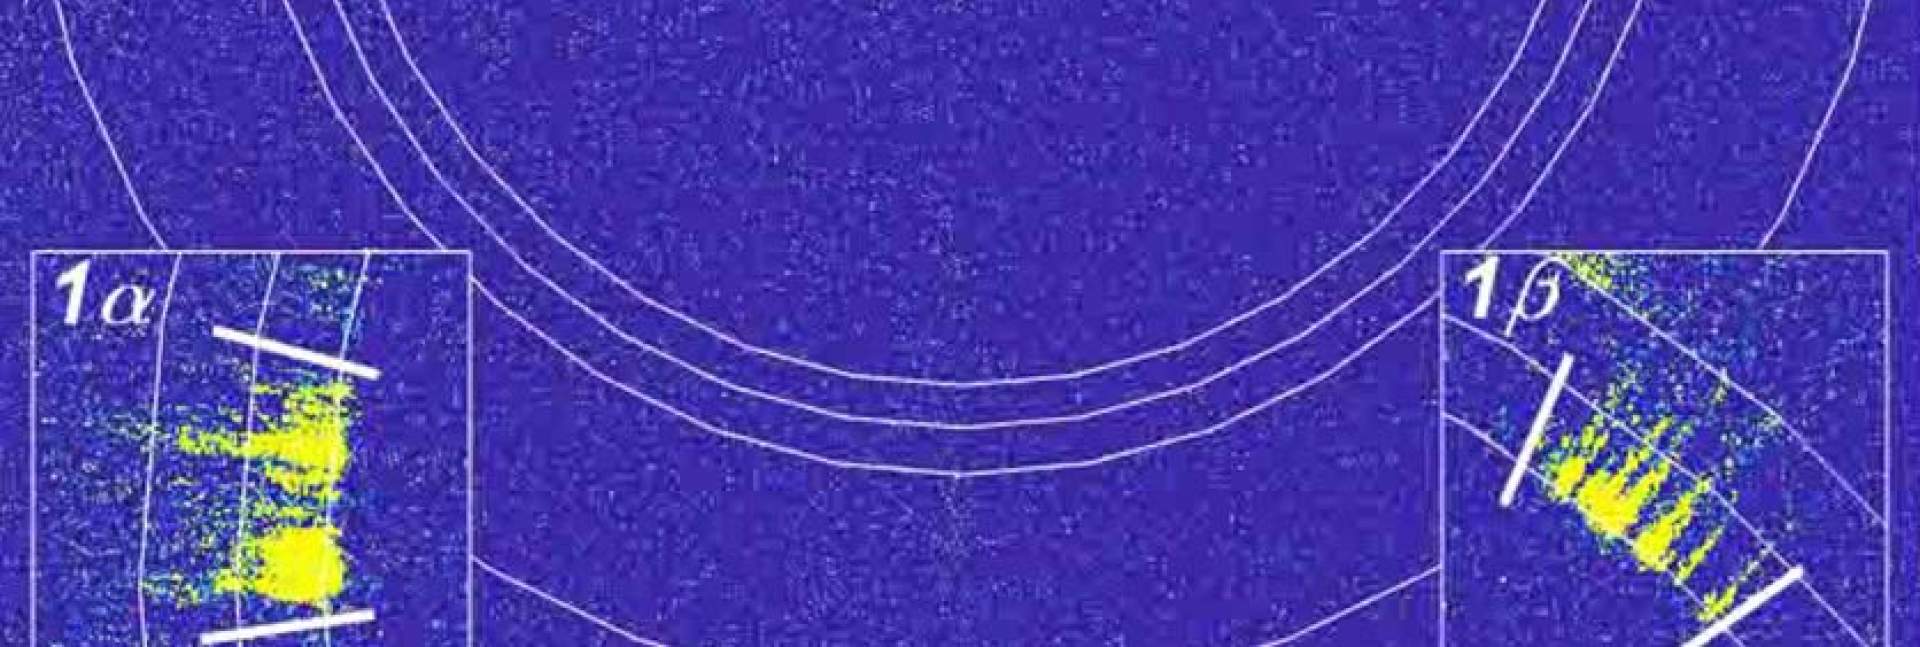 "חתימת" קרני הרנטגן הראשונה של גרעין הקפיאה (בצהוב) כפי שהופיעה על מסך הגלאי (בכחול). דפוסי פיזור קרני הרנטגן חשפו את פרטי ההתגבשות ברמת האטום הבודד